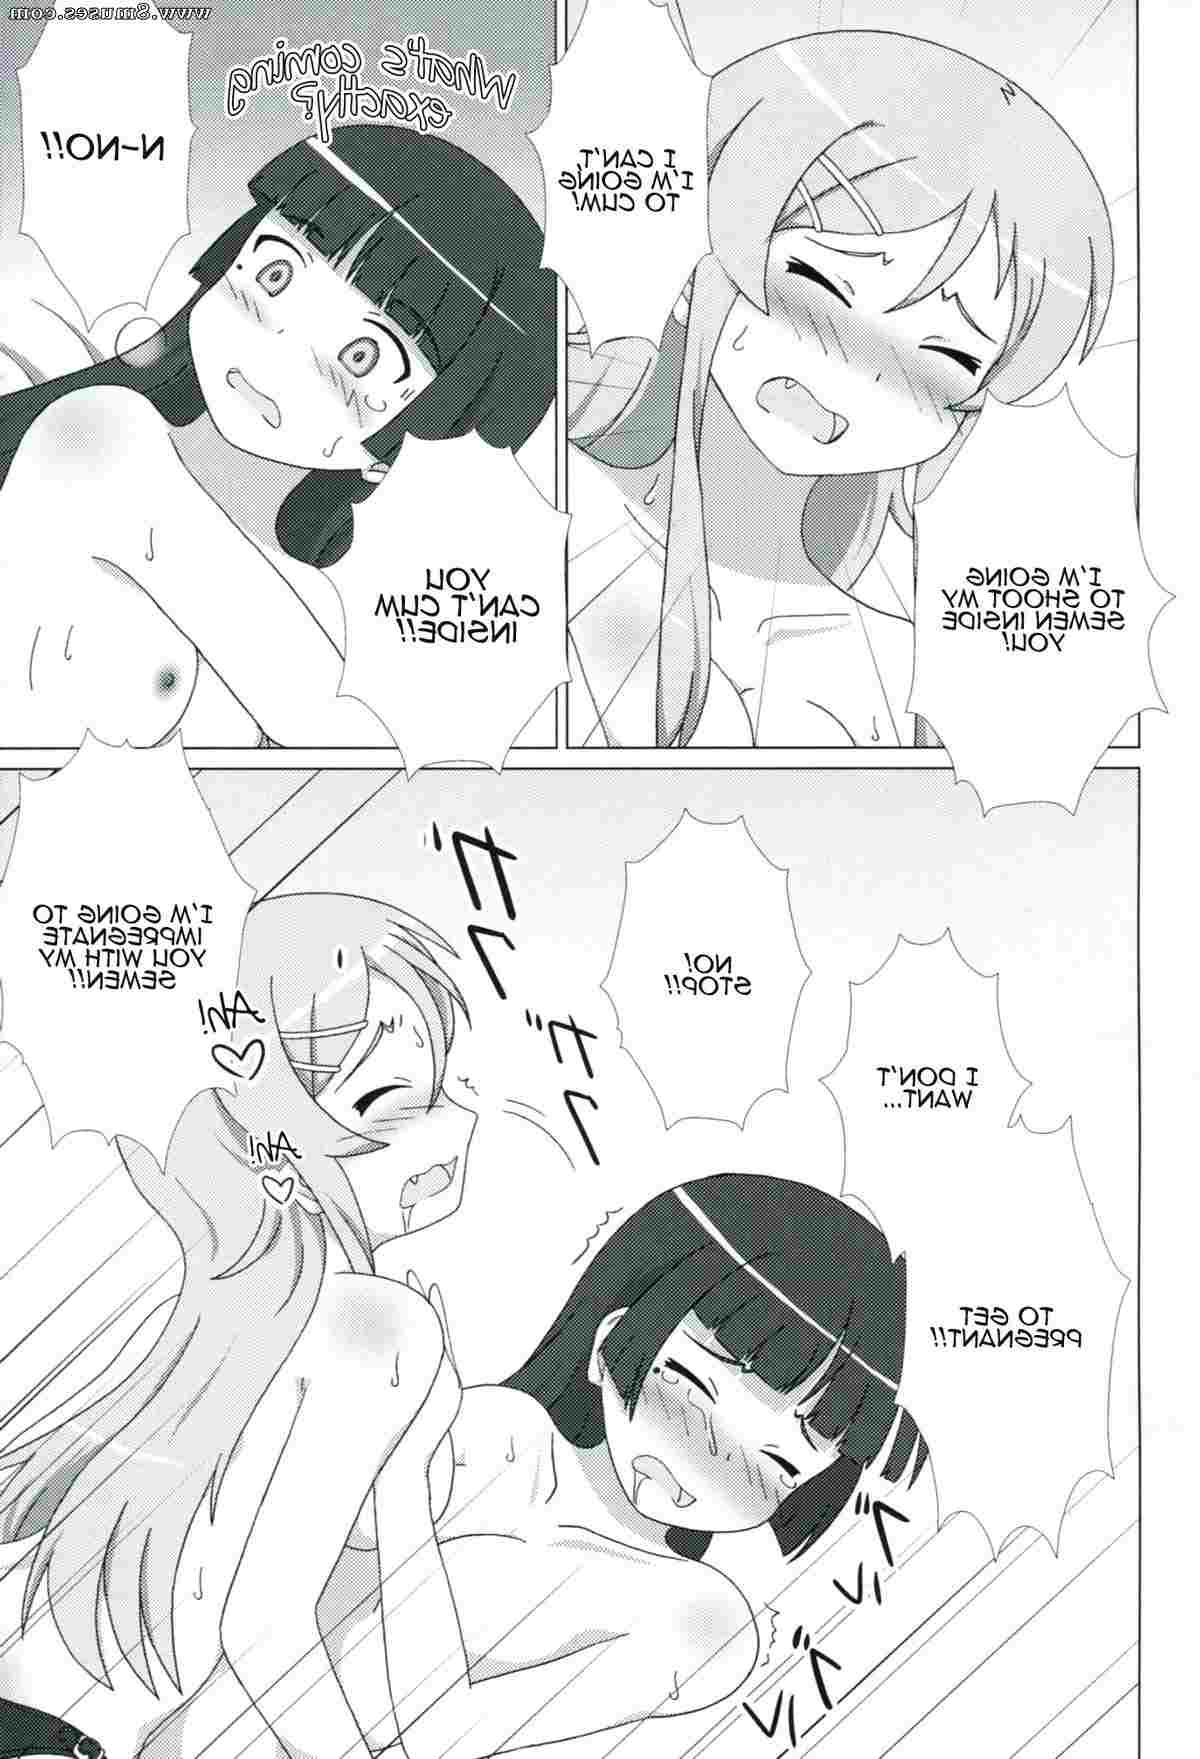 Hentai-and-Manga-English/Ore-no-imouto-ga-konna-ni-kawaii-wake-ga-nai/Kuroneko-ga-Atashi-no-Imouto-EX Kuroneko_ga_Atashi_no_Imouto_EX__8muses_-_Sex_and_Porn_Comics_25.jpg